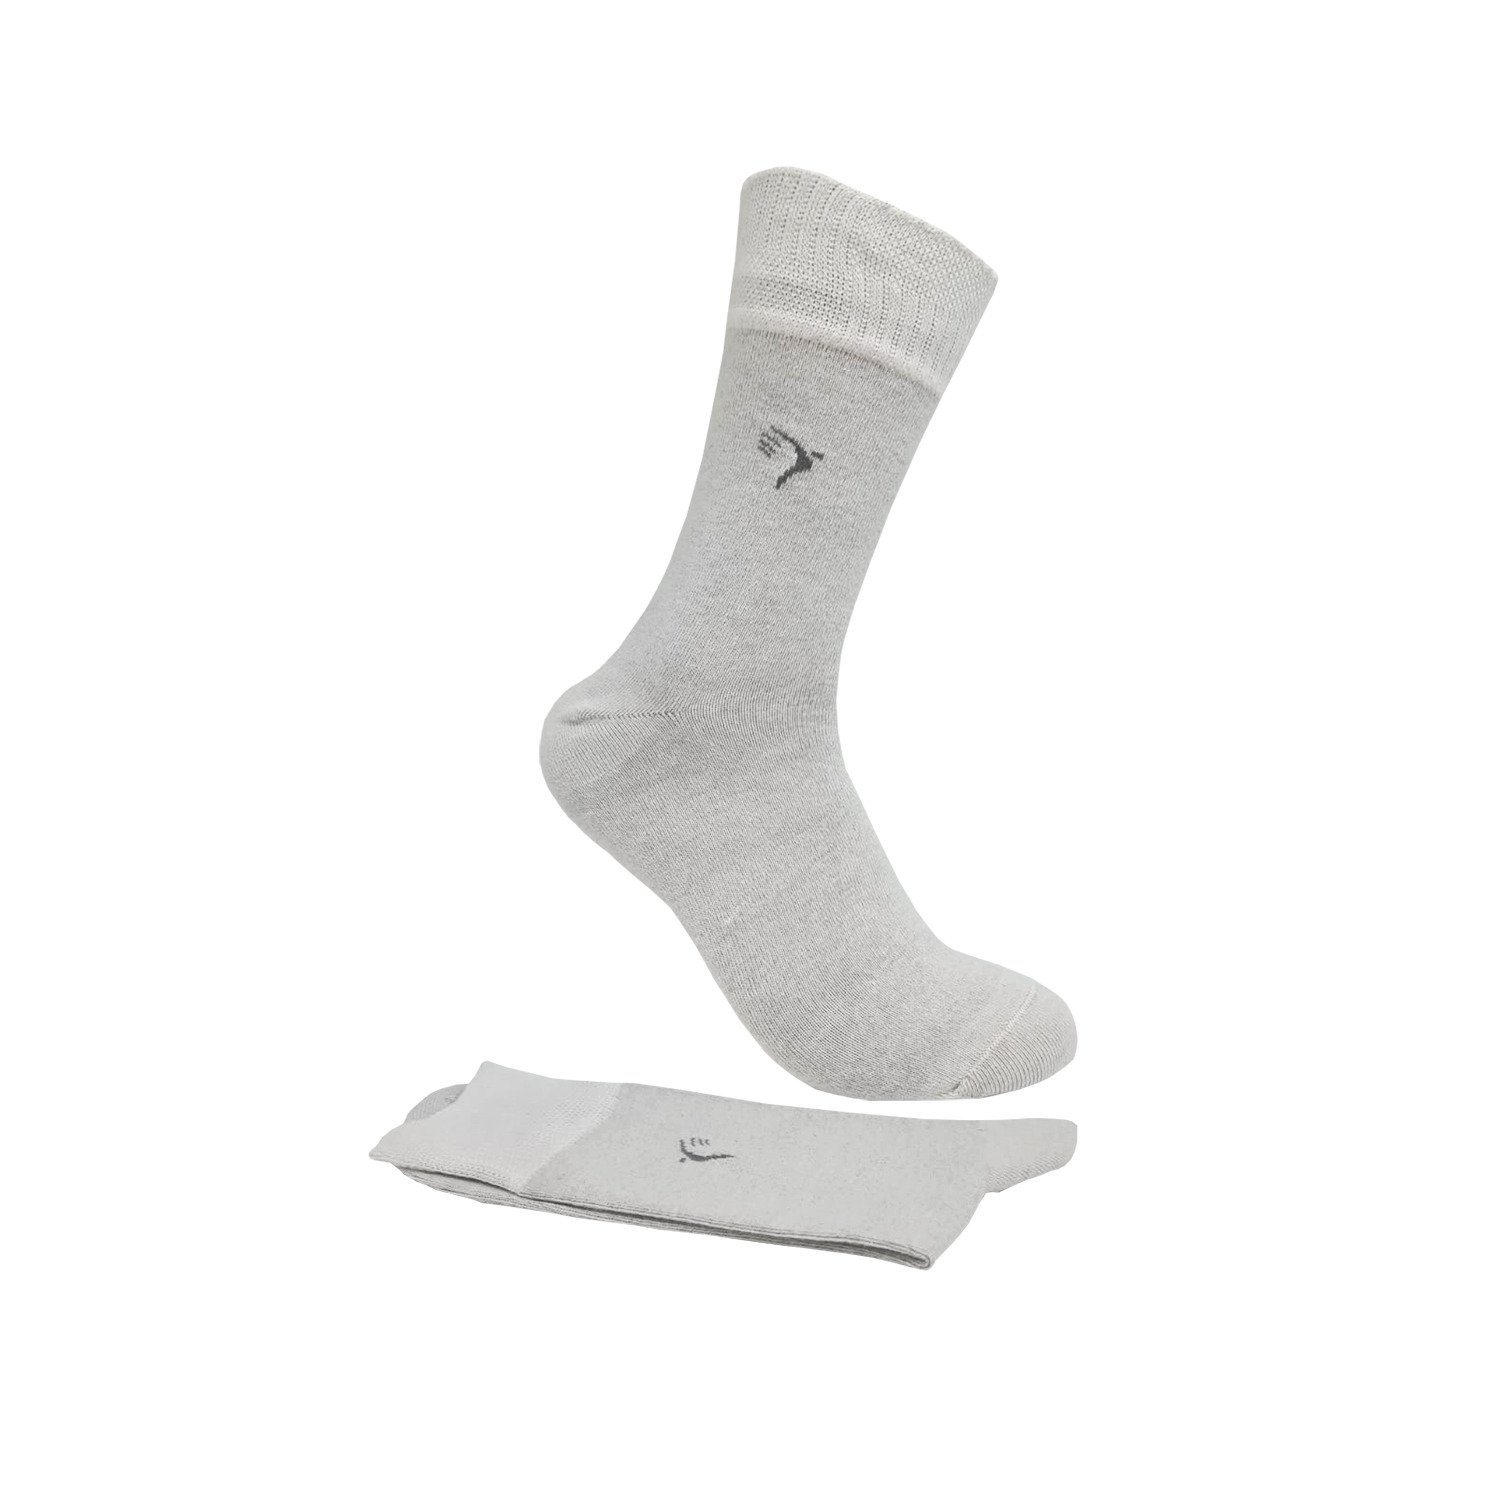 Komfortbund weiß 10% Gummi) (5-Paar) Socken mit Lindner Antibakterielle (ohne Max Silbersocken, Diabetikersocken, Silbergarn